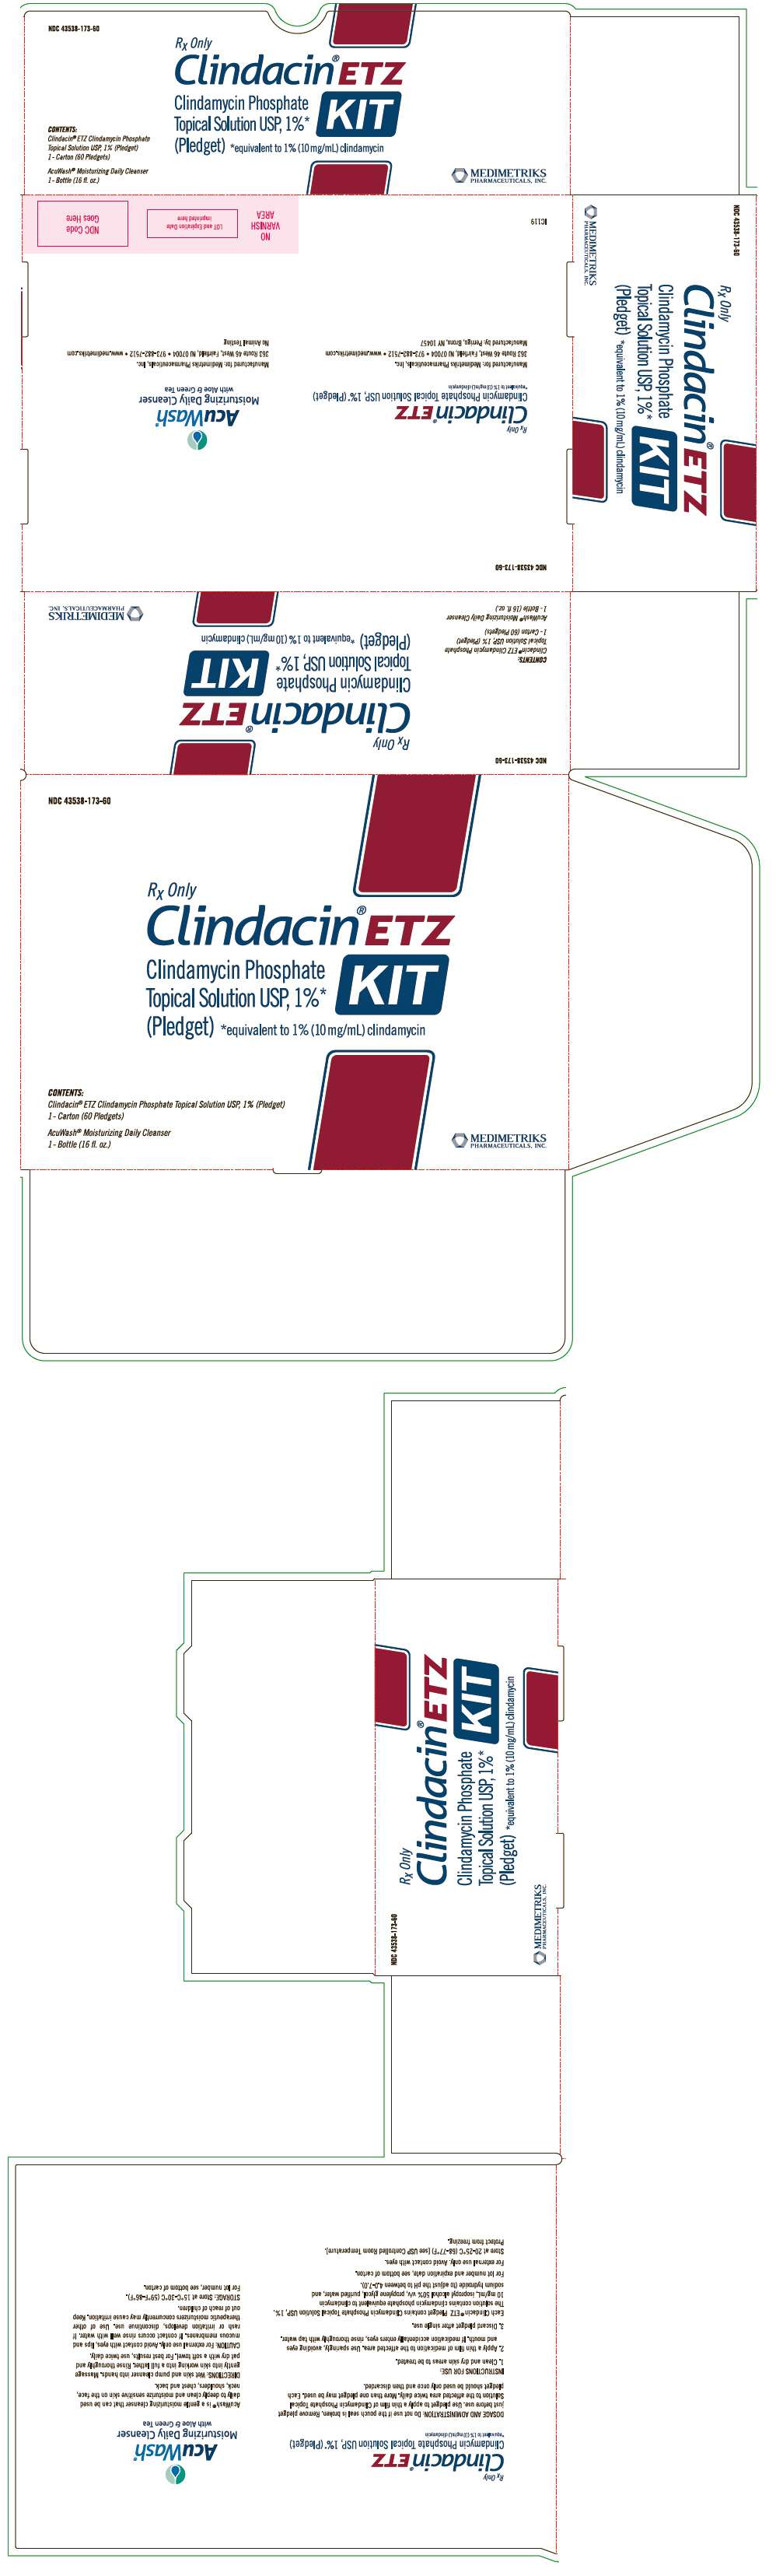 Clindacin ETZ